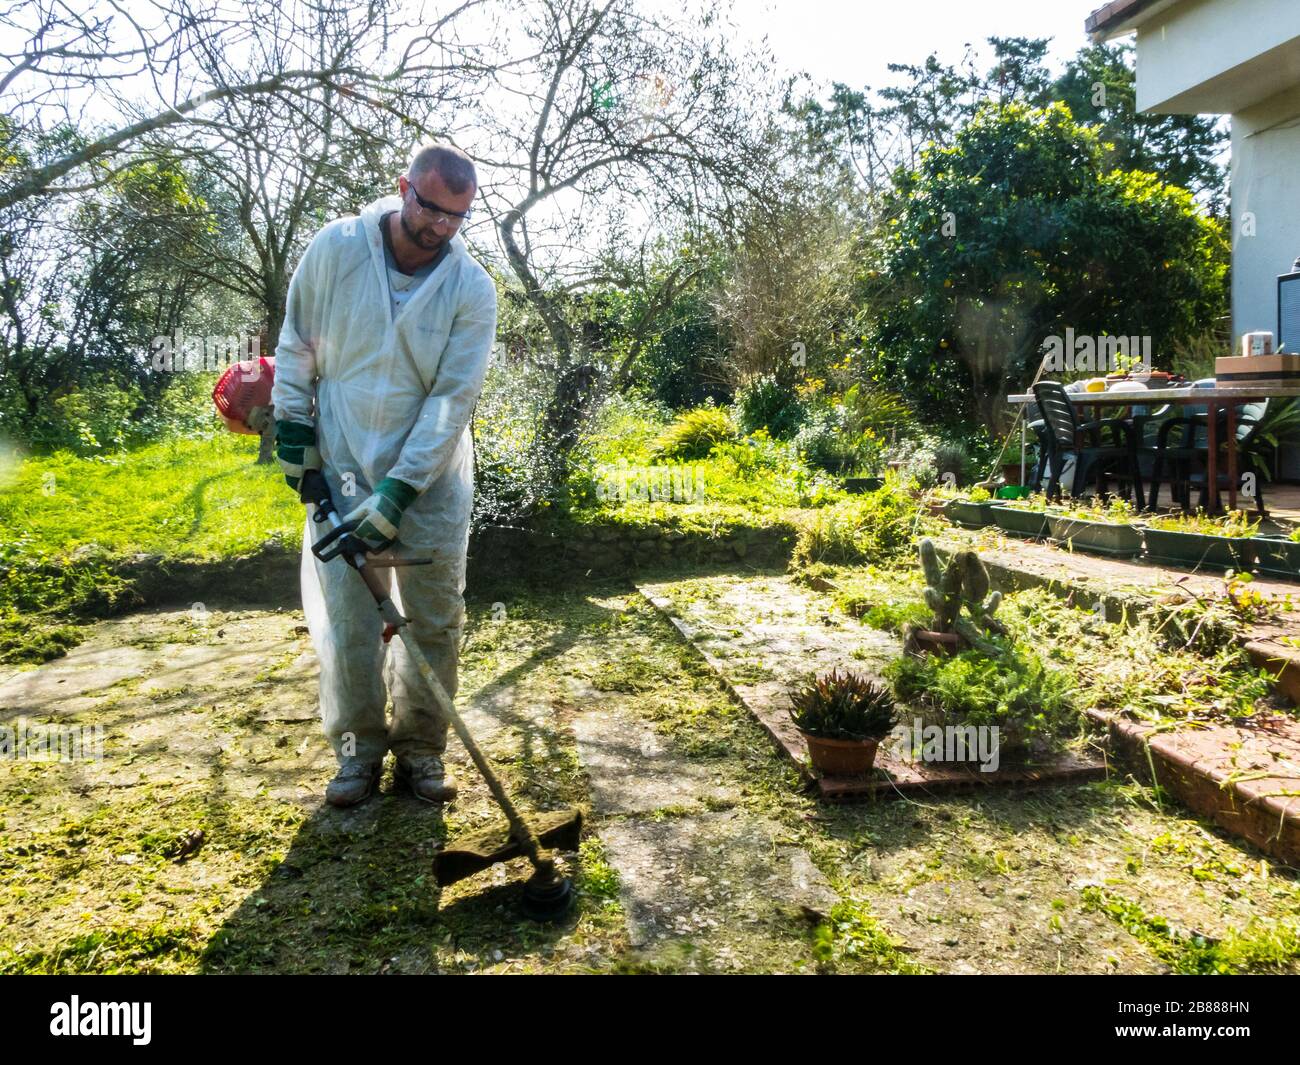 Uomo che indossa una tuta bianca tagliando l'erba in giardino in una giornata di sole Foto Stock